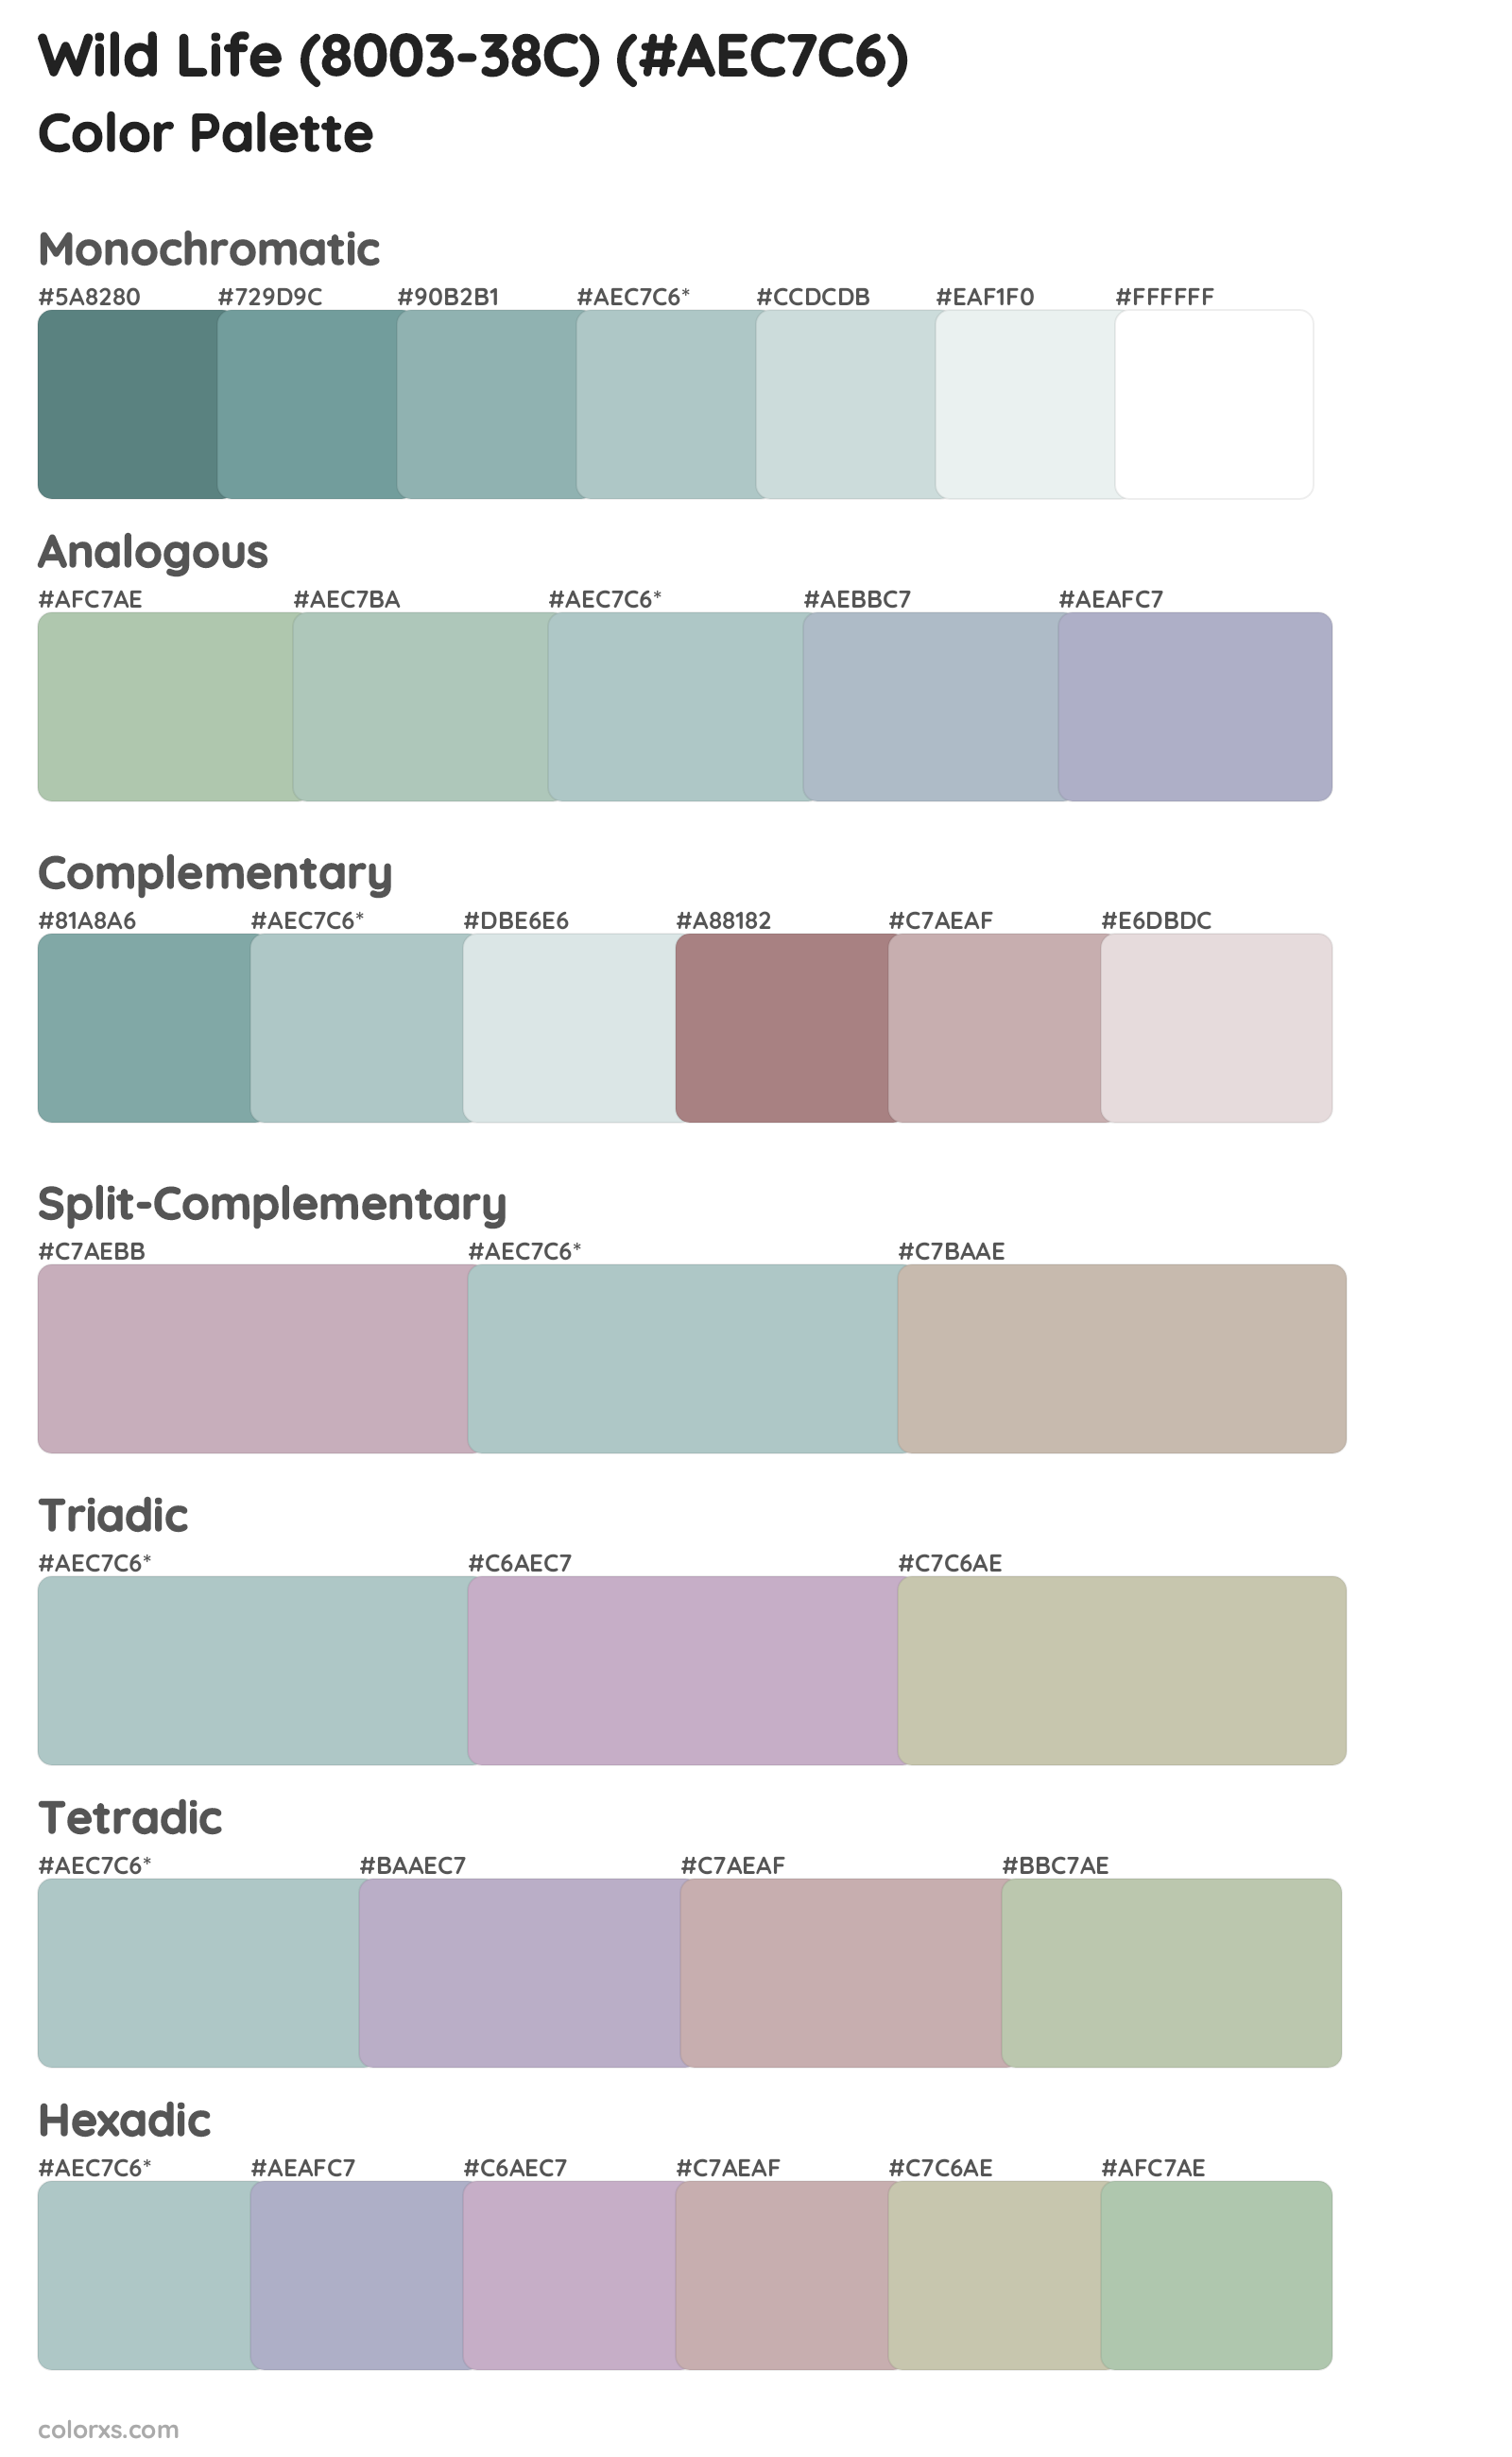 Wild Life (8003-38C) Color Scheme Palettes